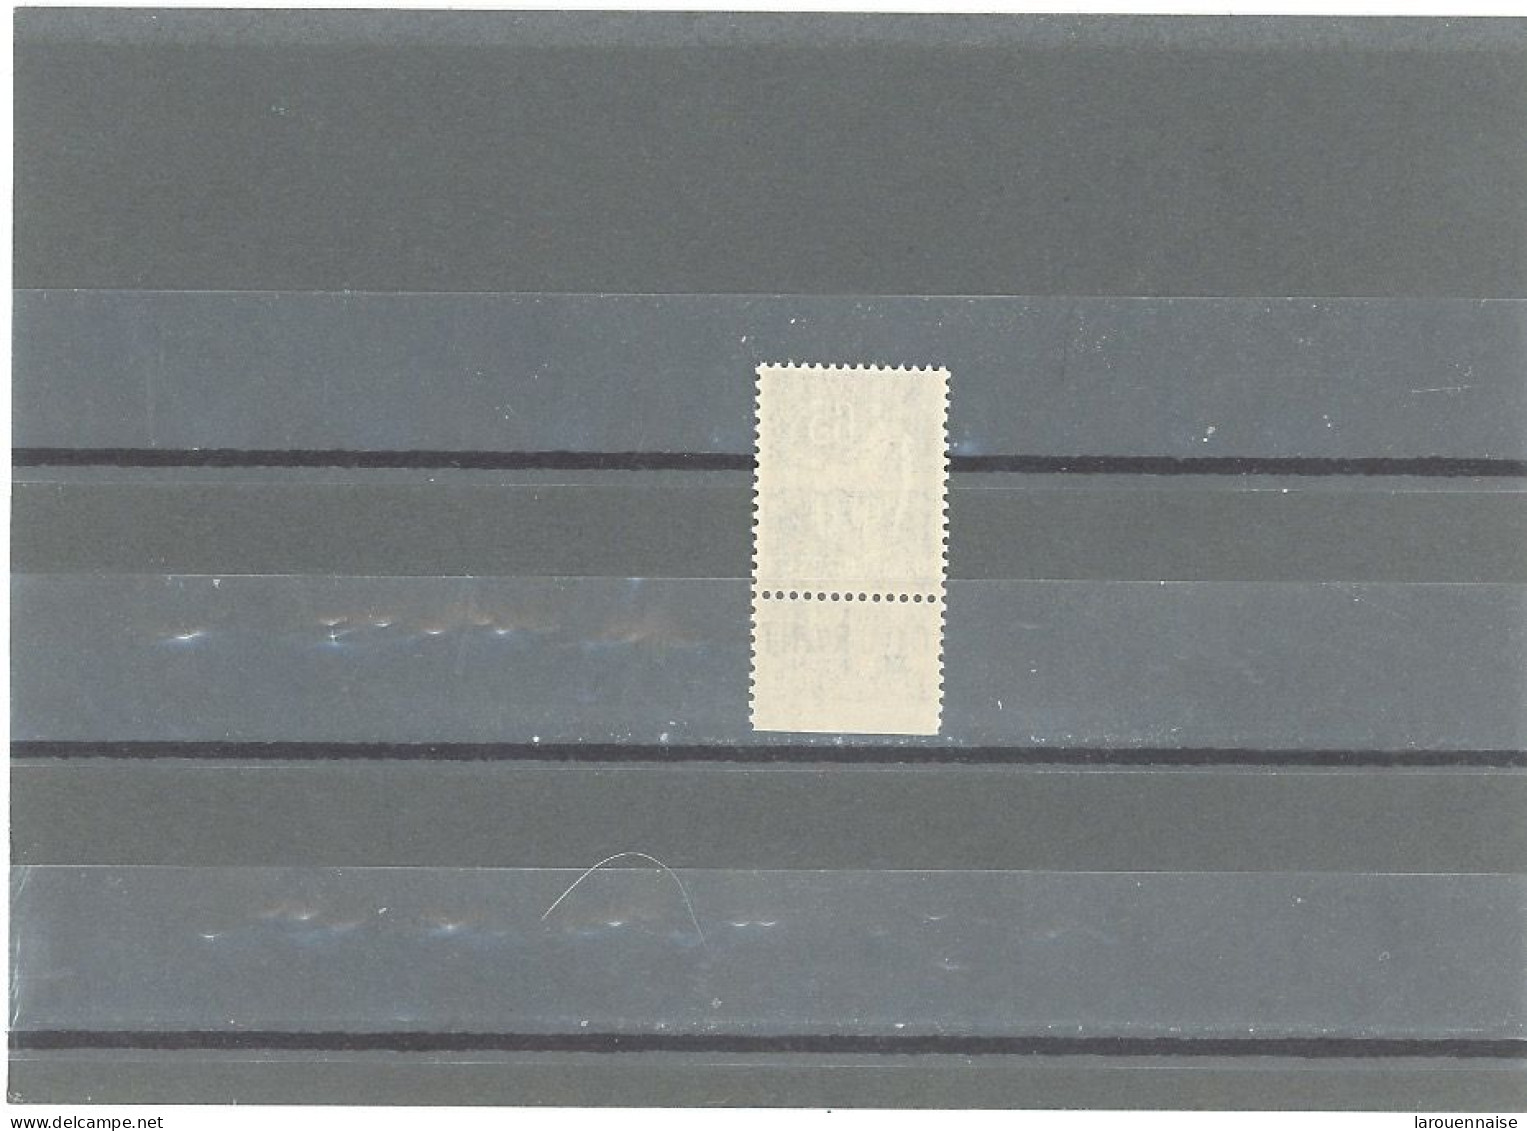 BANDE PUB -N°365  -PAIX 65c BLEU  N** - TYPE III -PUB C C P  (MAURY 244) - Unused Stamps